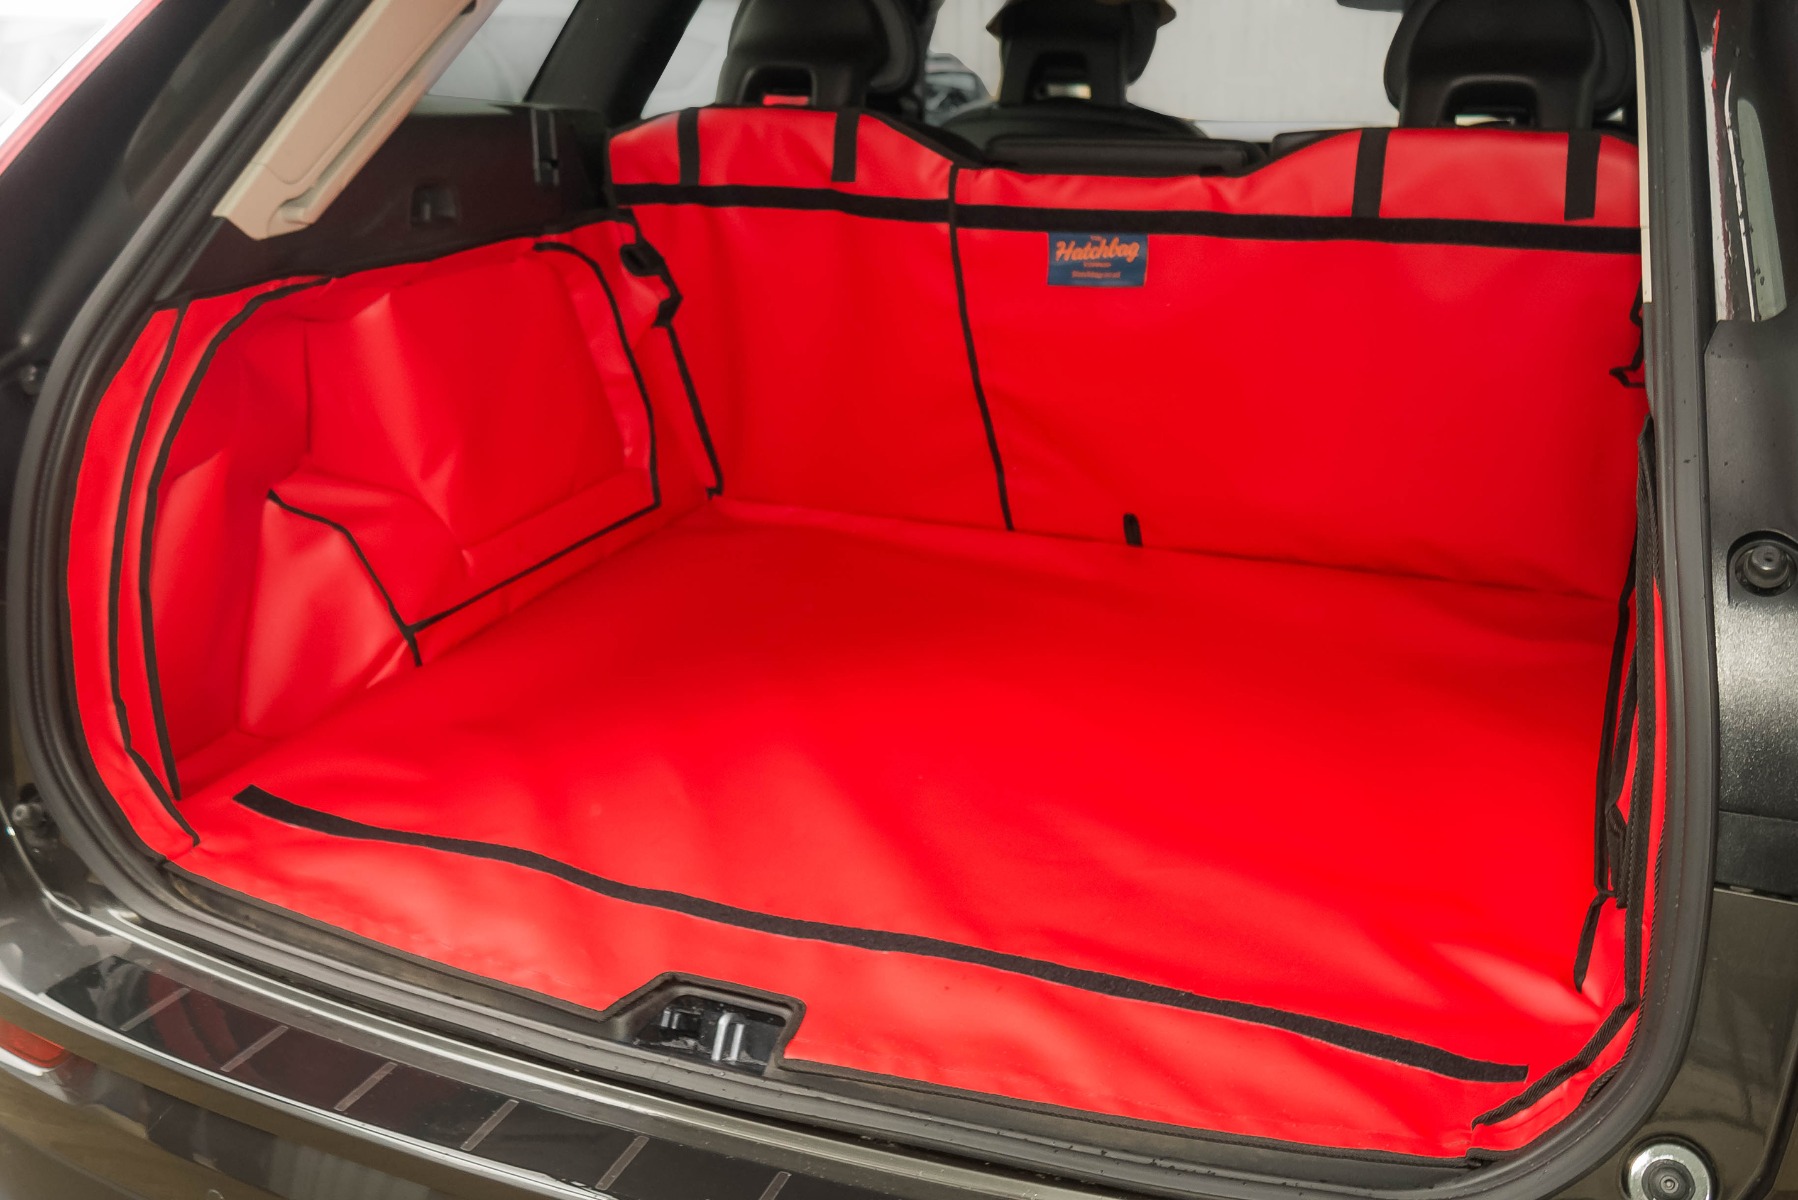 Hatchbag boot liner in red